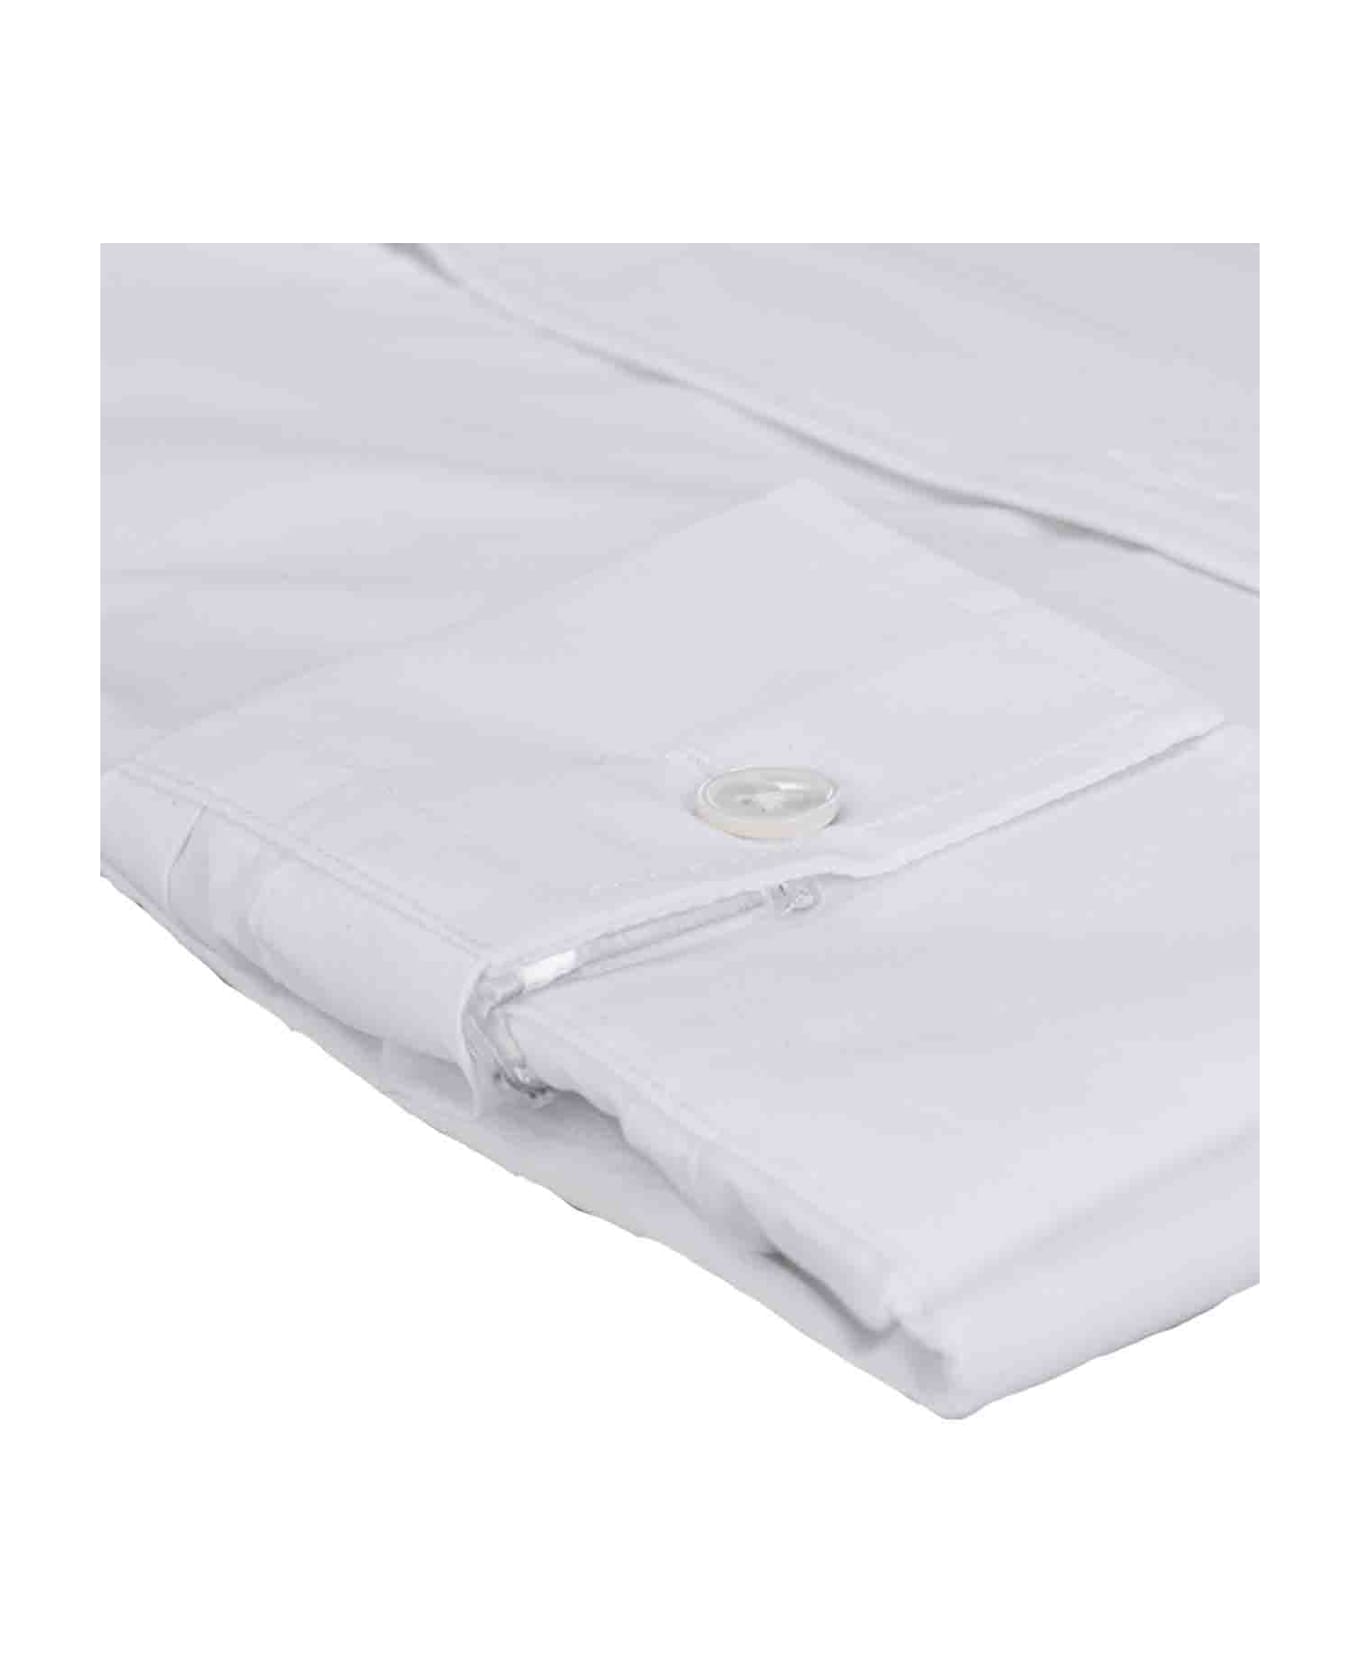 Bagutta Shirts White - White